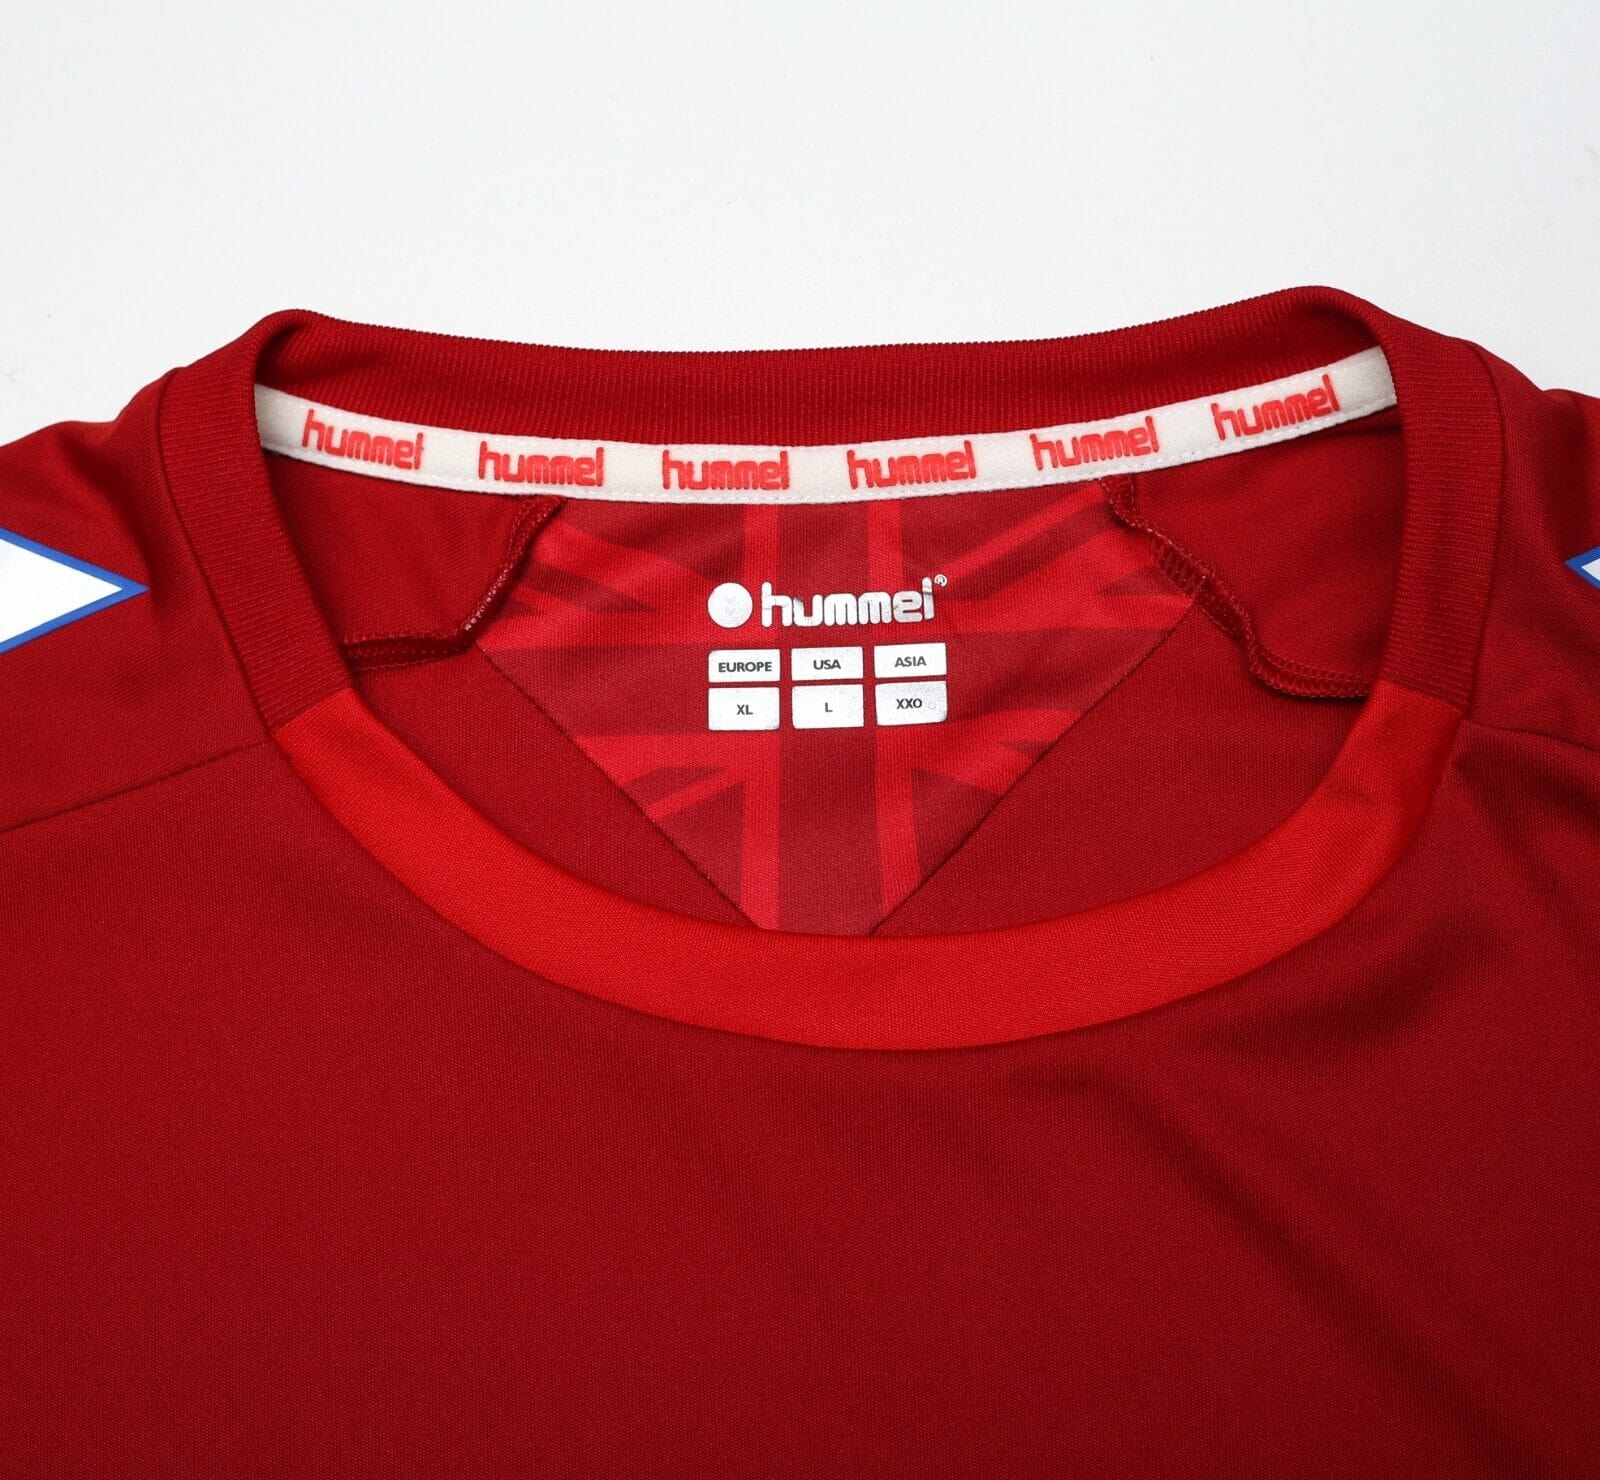 2019/20 RANGERS Hummel Third Football Shirt Jersey (L/XL)